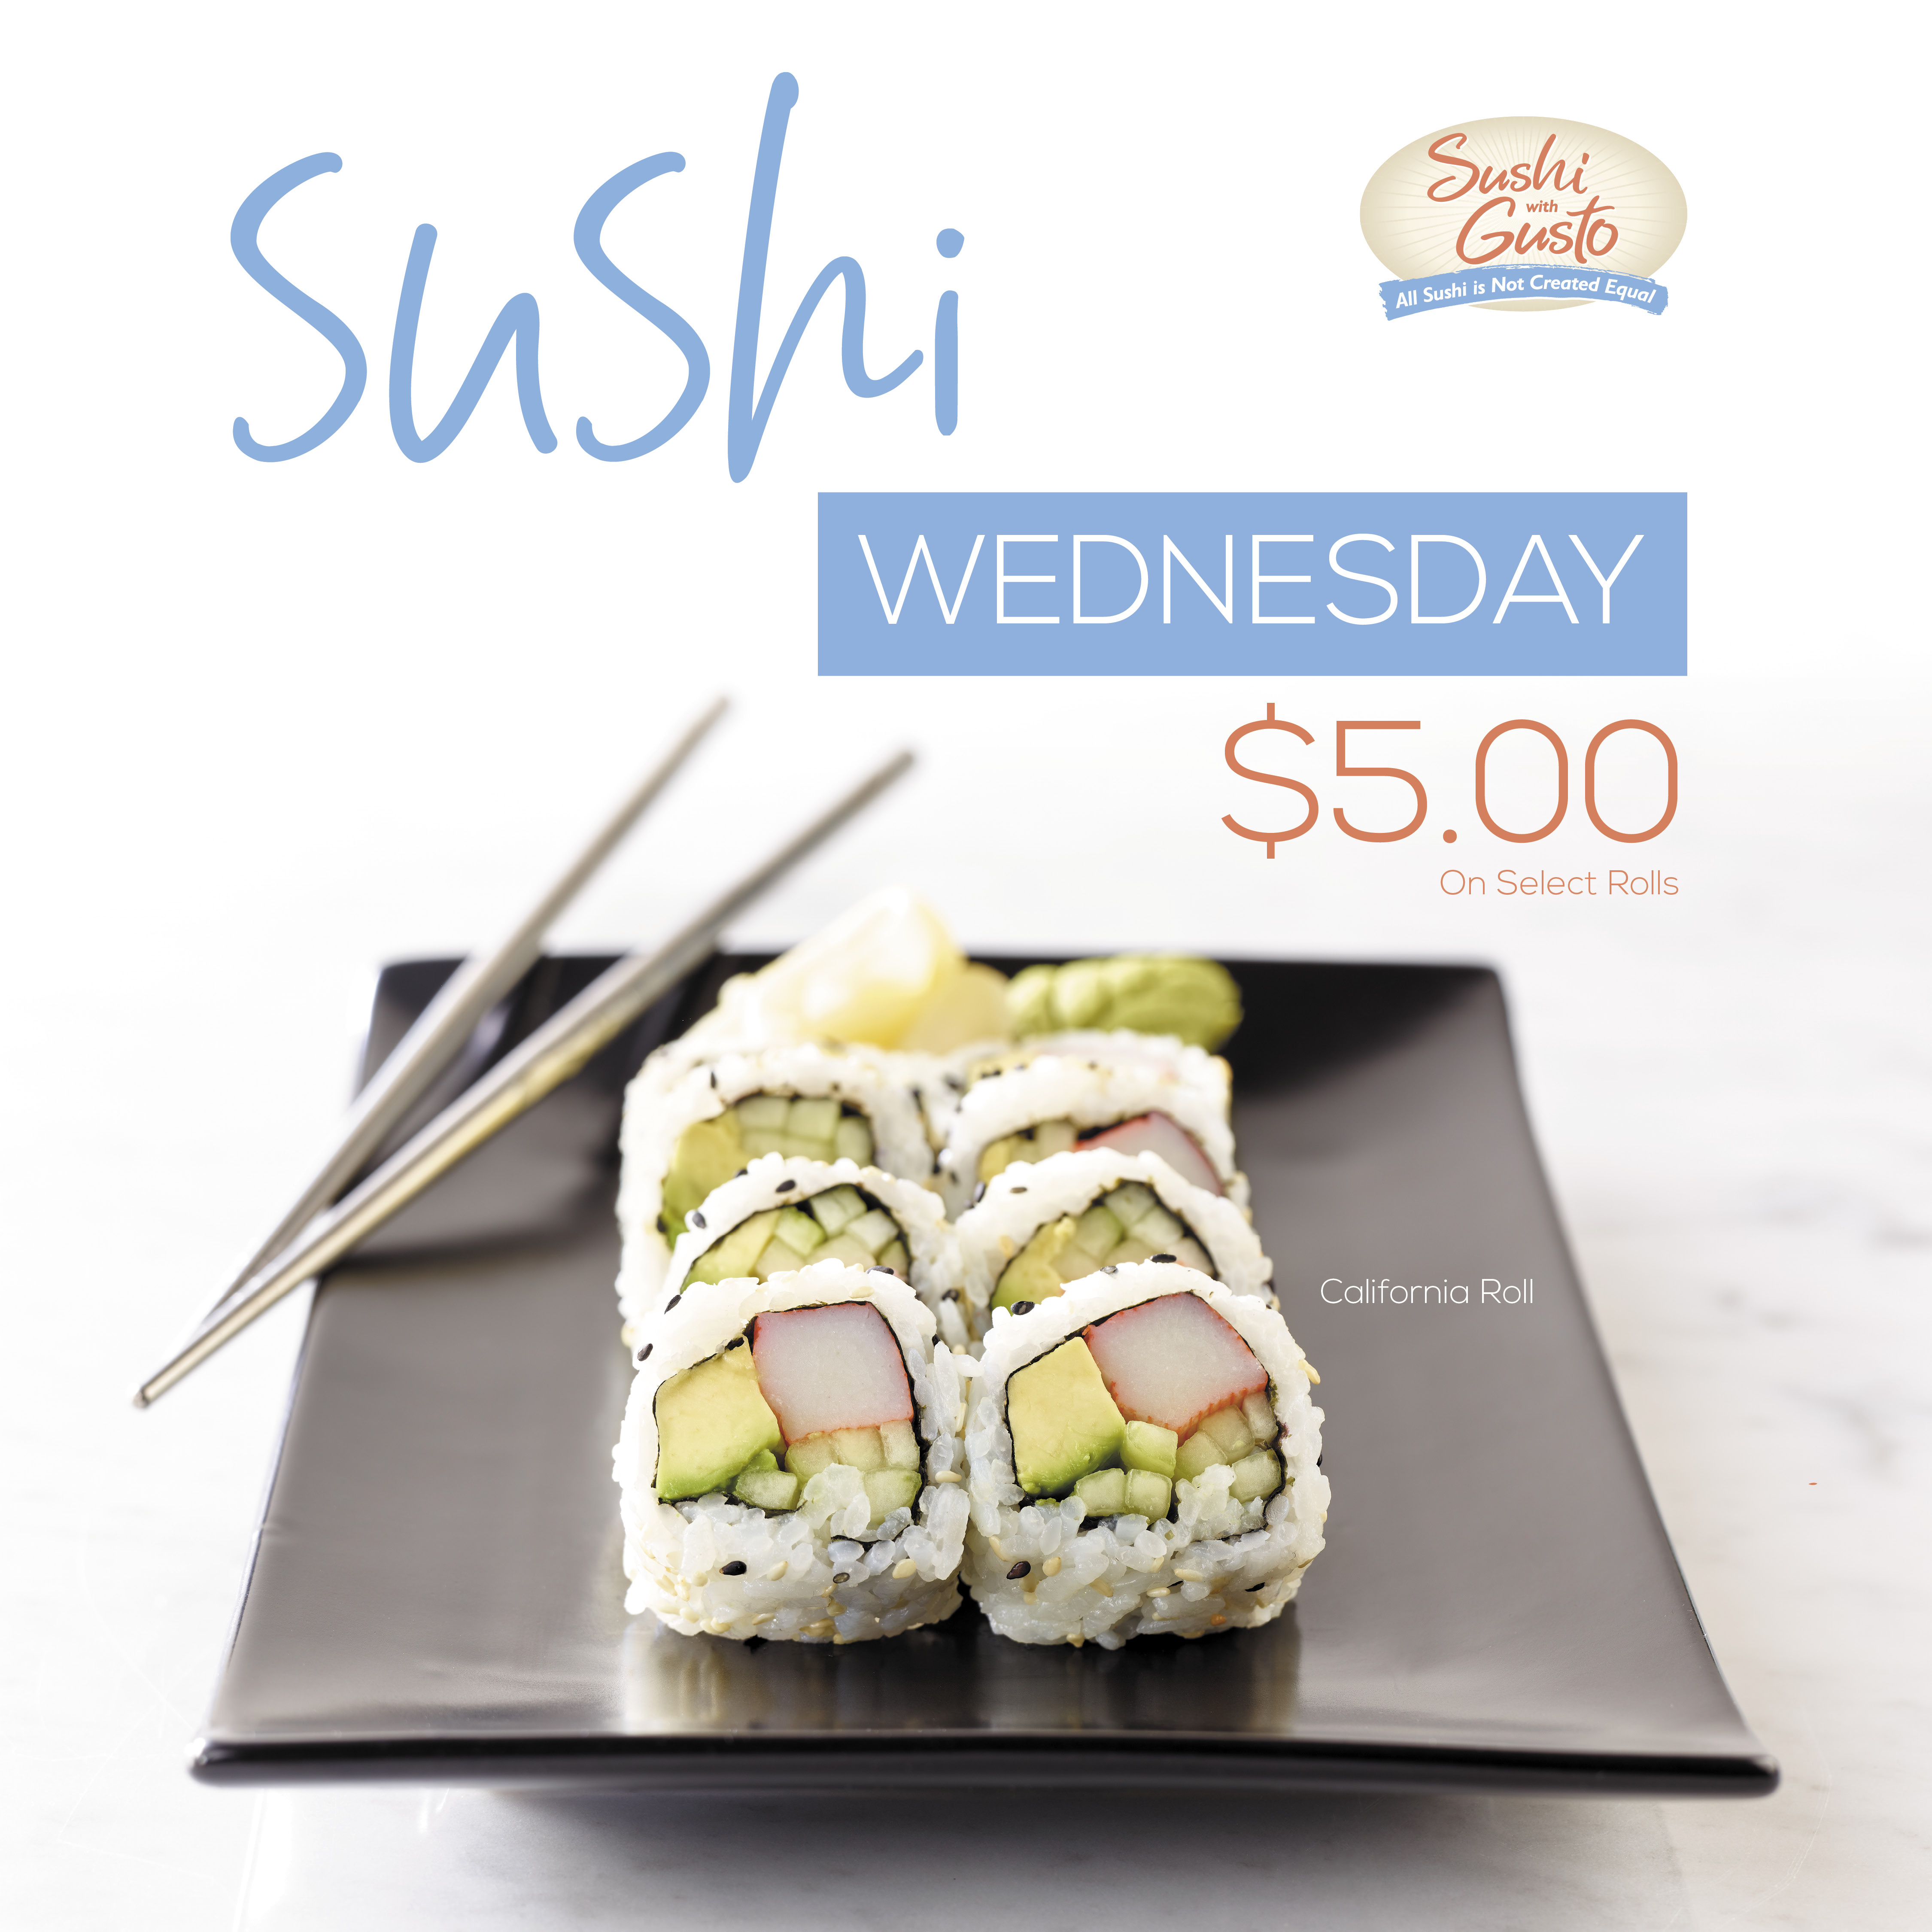 Sushi With Gusto! Sushi Wednesday!